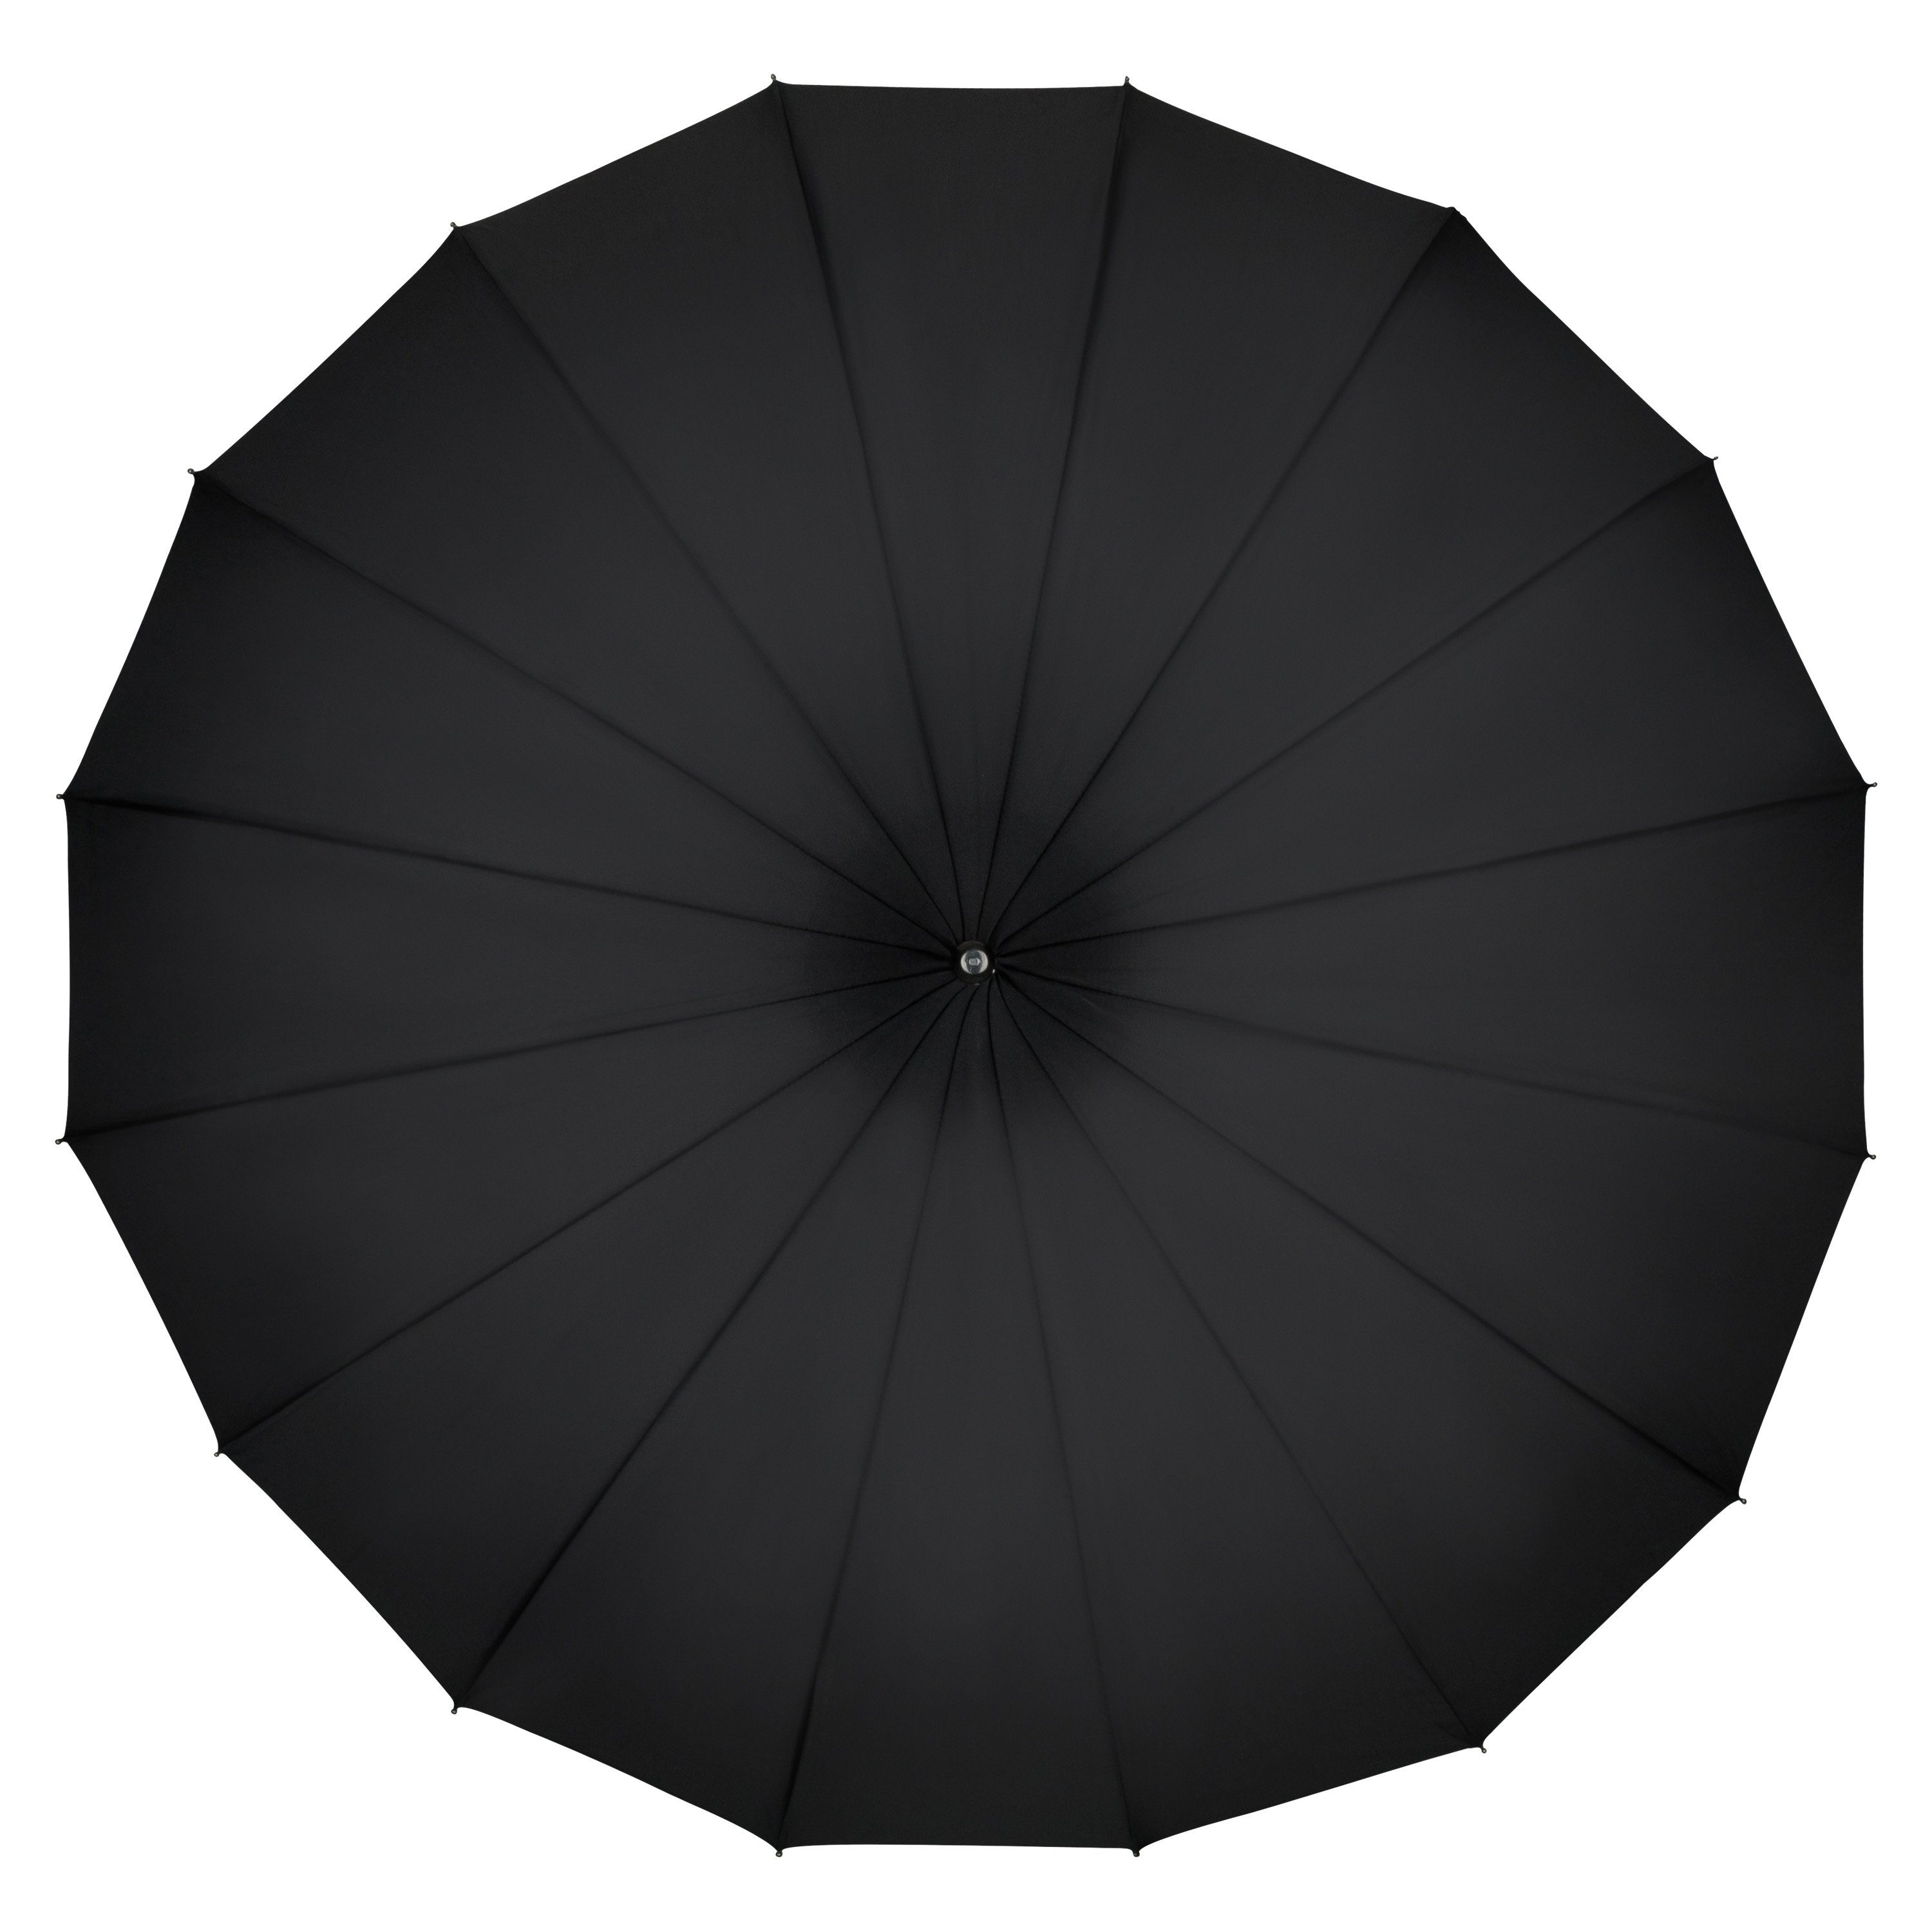 Lilienfeld Pagodenform Fabienne, Pagode Brautschirm schwarz Stockregenschirm von Sonnenschirm Hochzeitsschirm